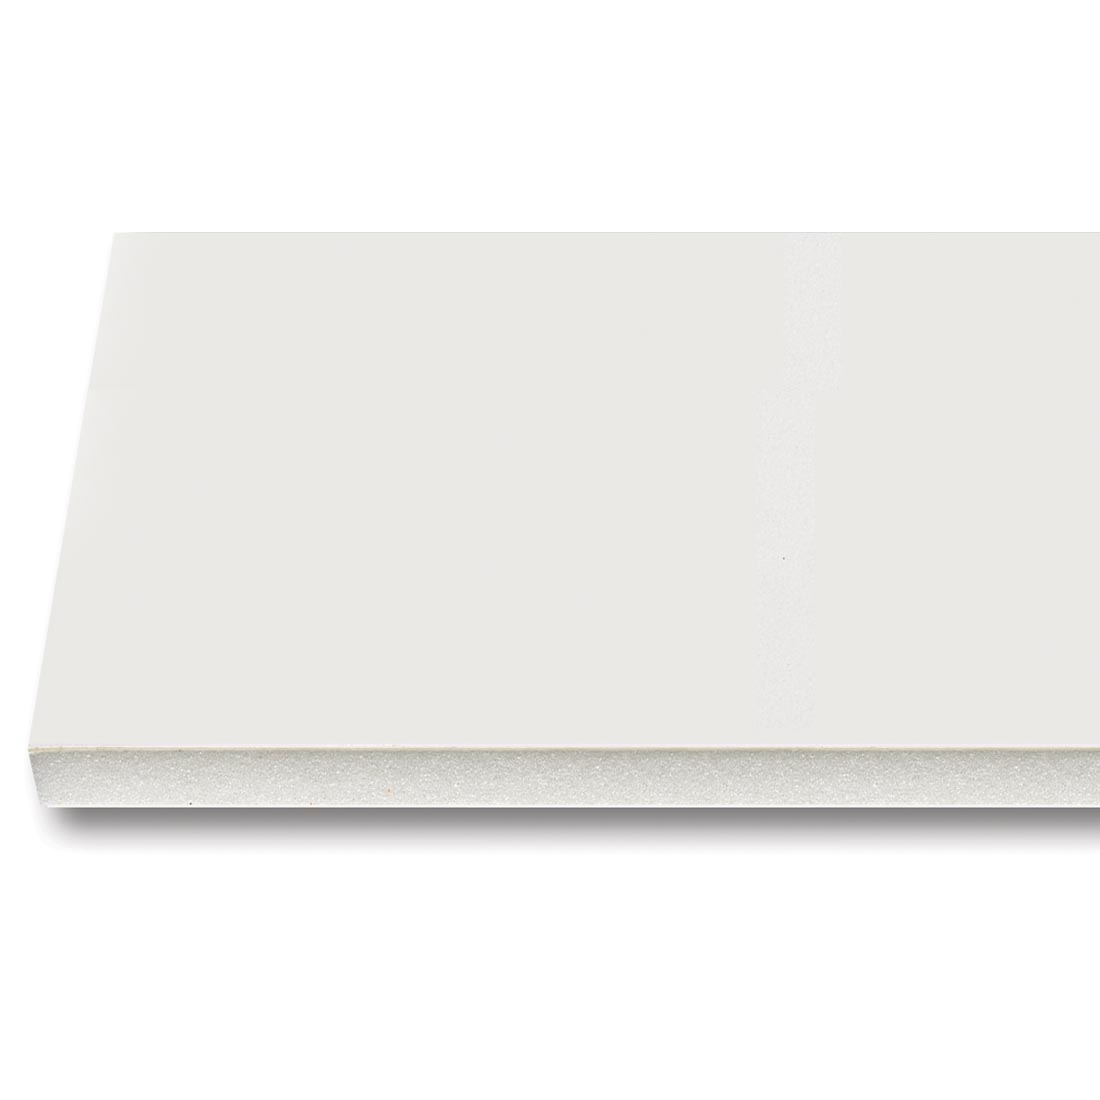 portion of white foam board sheet